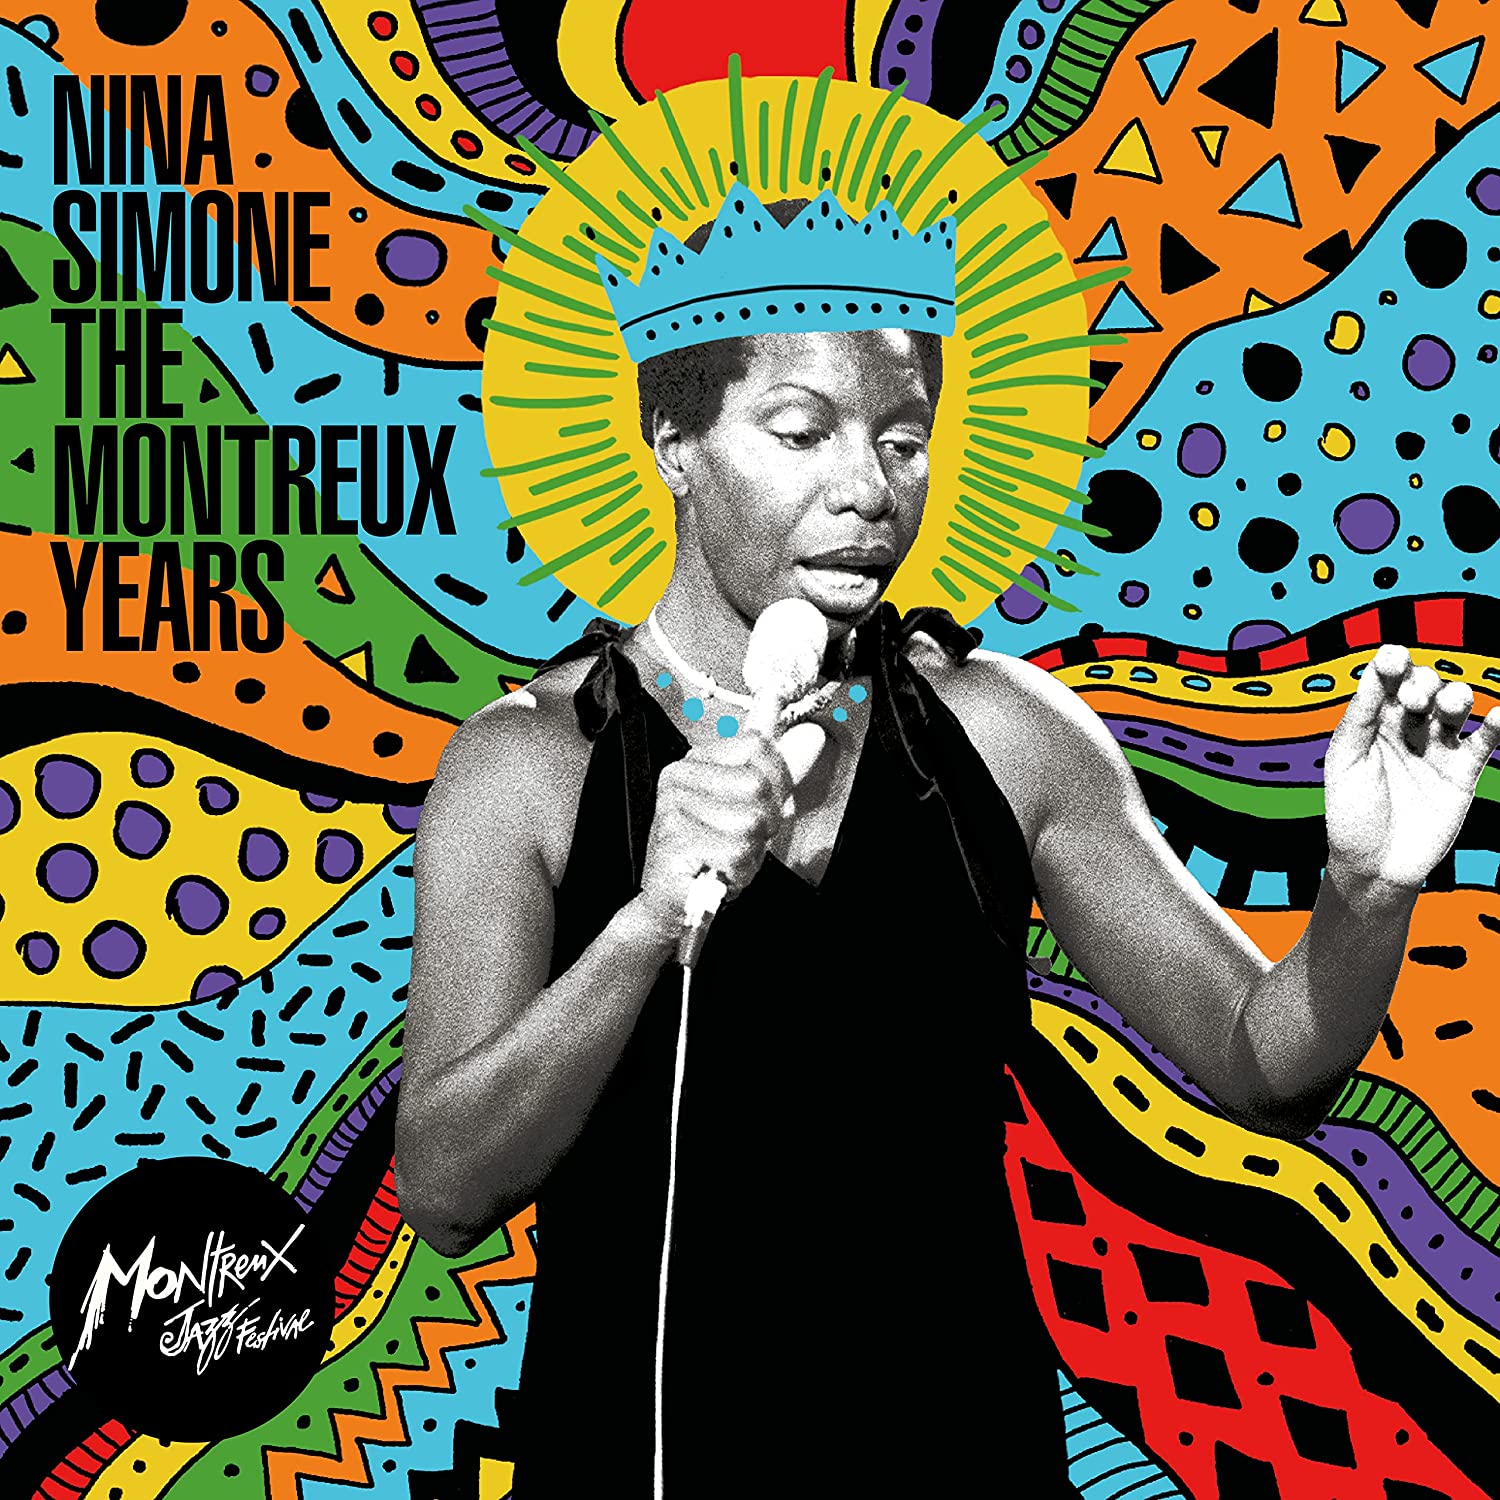 Nina-Simone-The-Montreux-Years-Double-Vinyl